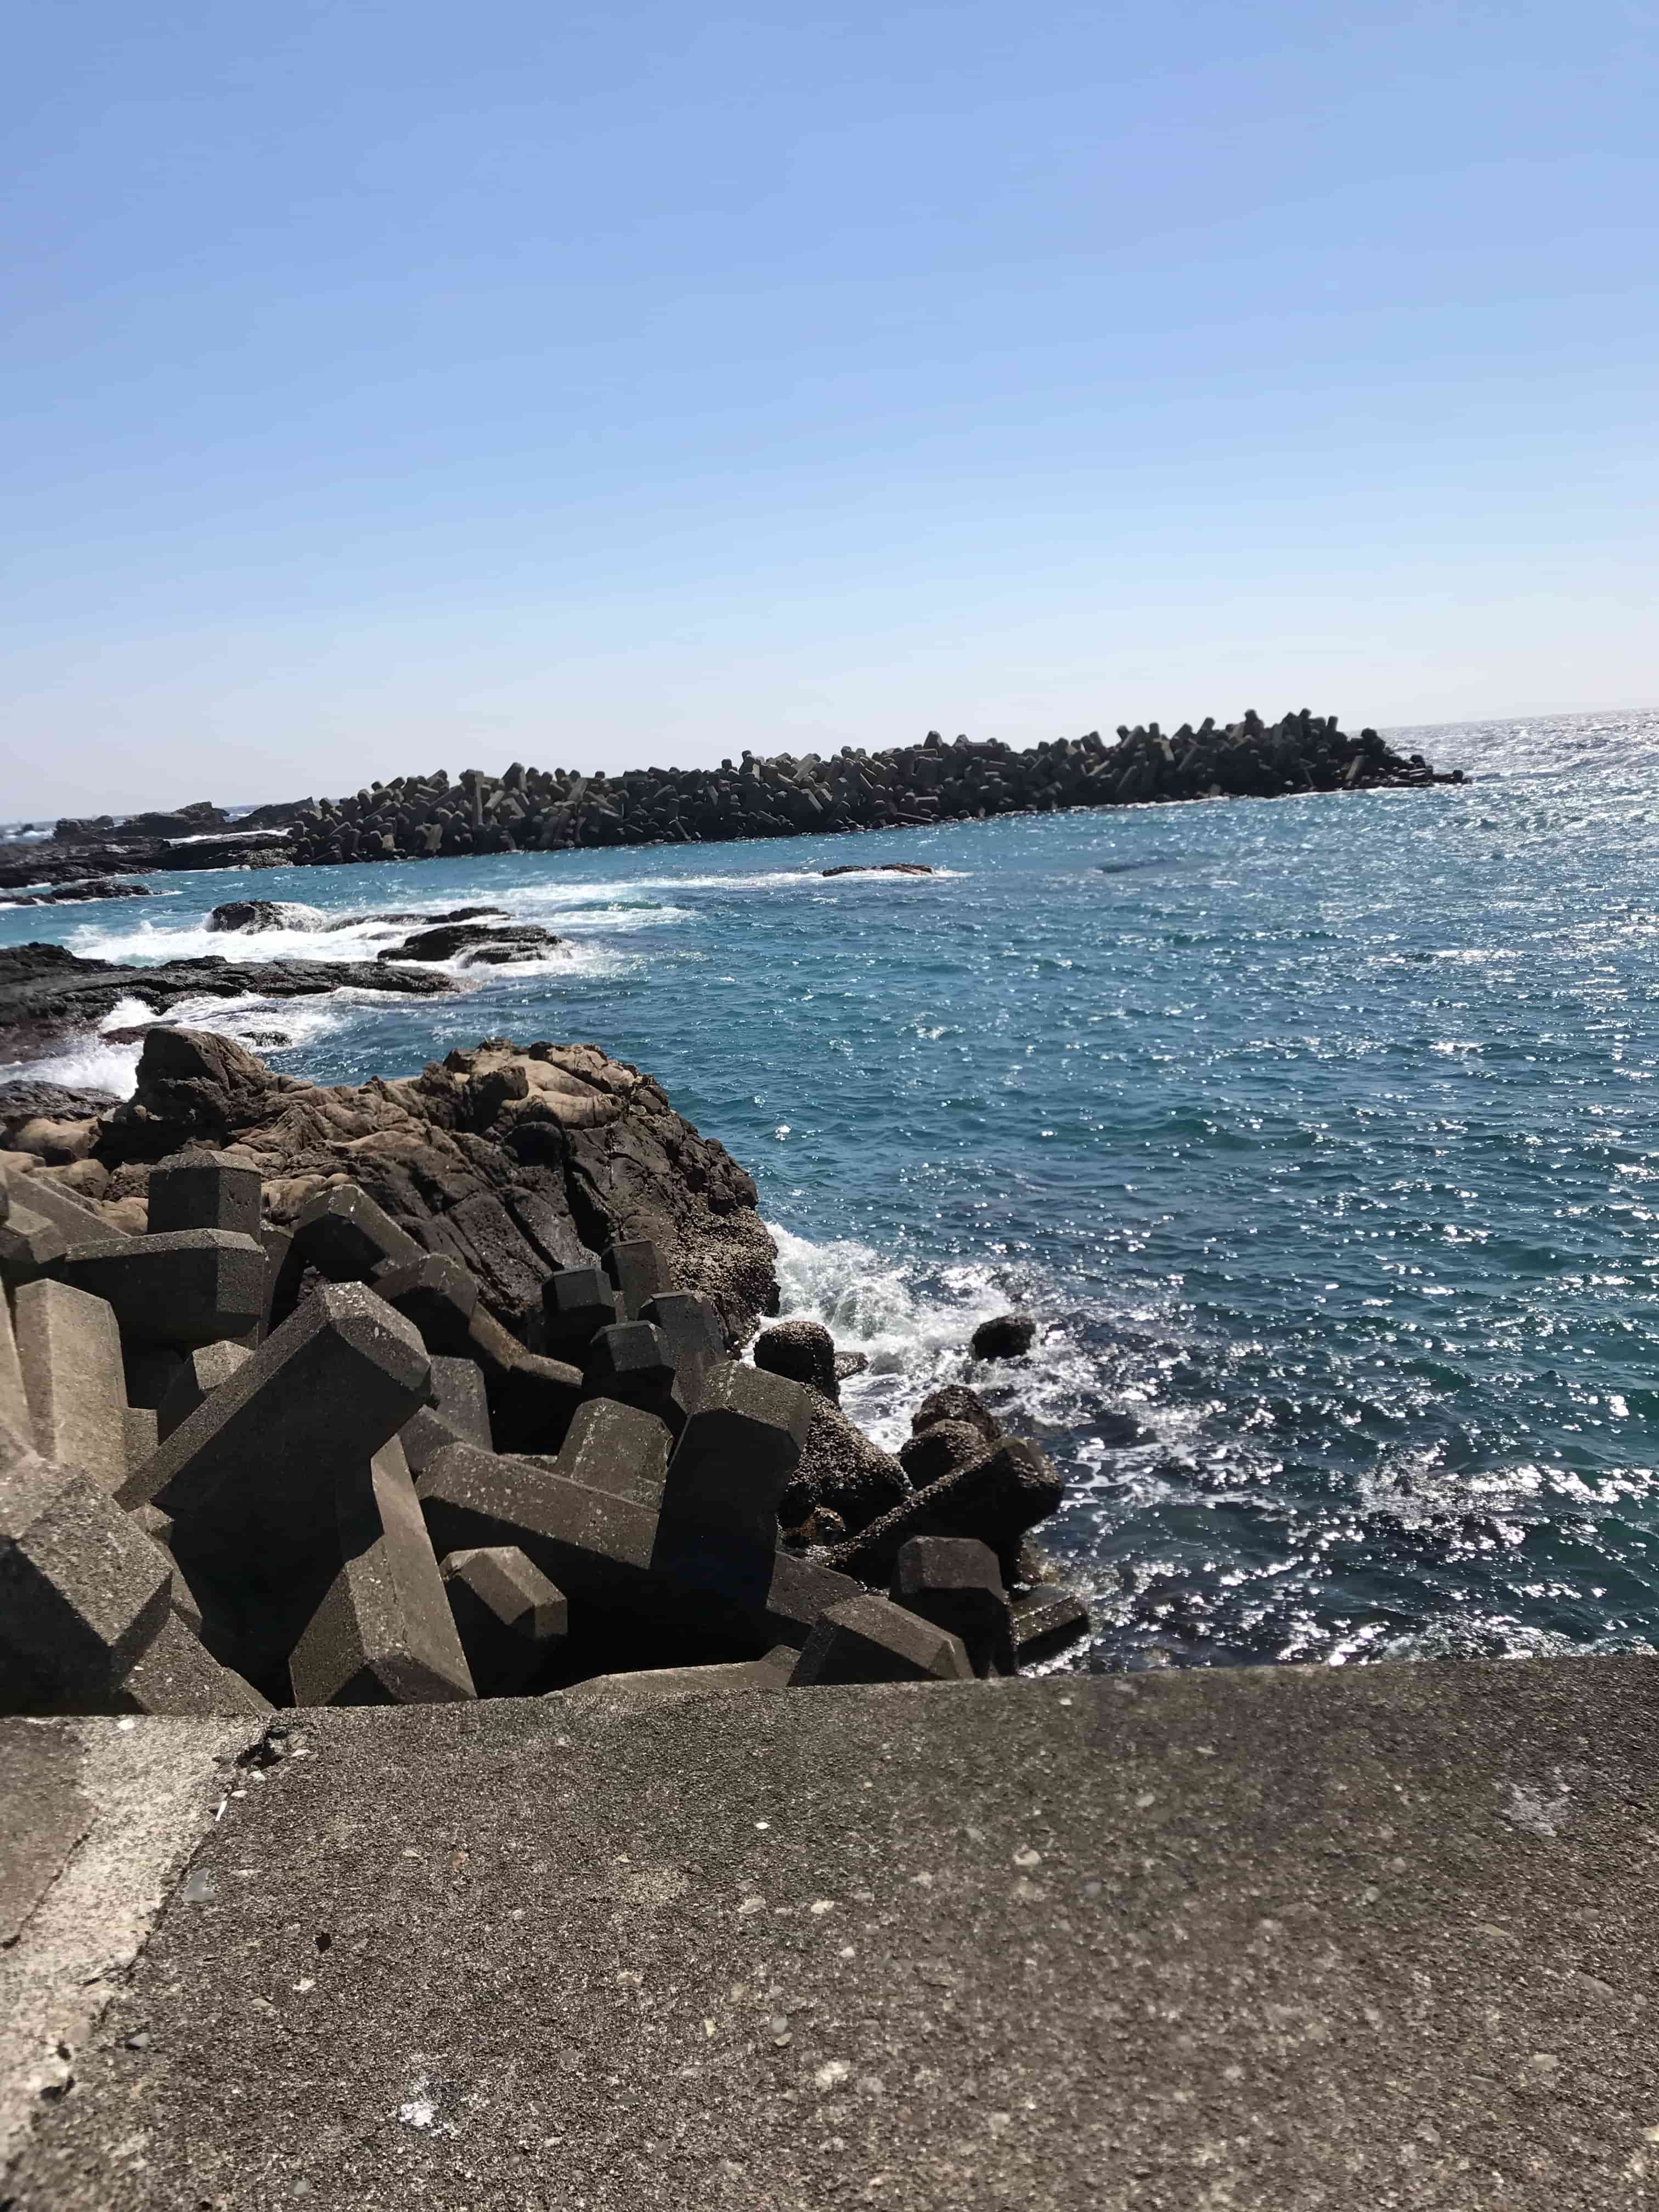 和深漁港の釣り場紹介、和歌山県南紀串本町のお手軽秋イカ狙いのエギングにオススメの漁港